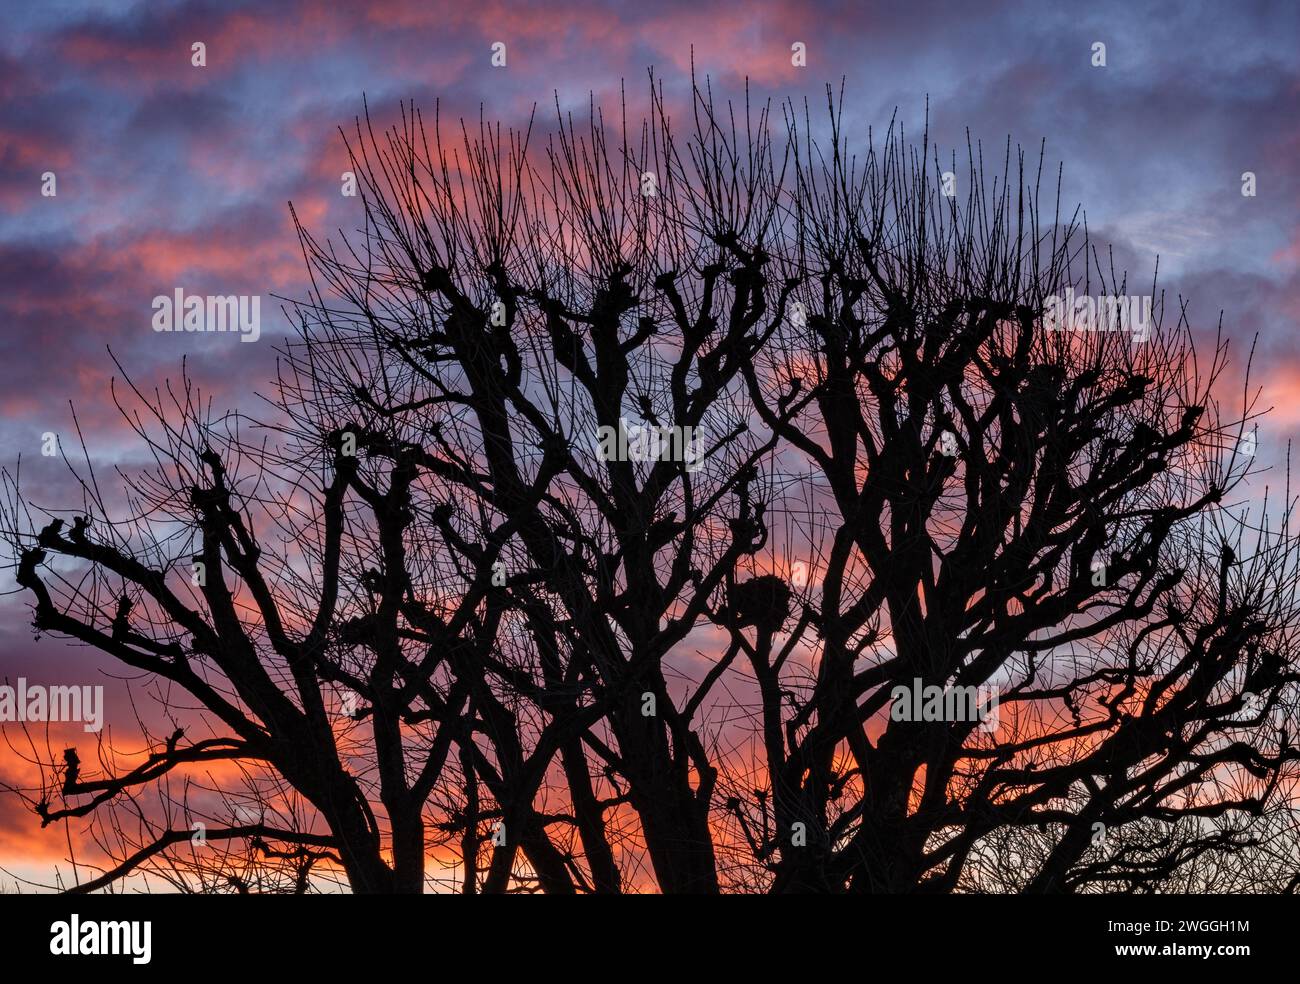 Silhouette hivernale d'un arbre Sycamore taillé contre un lever de soleil coloré - Gloucestershire UK Banque D'Images